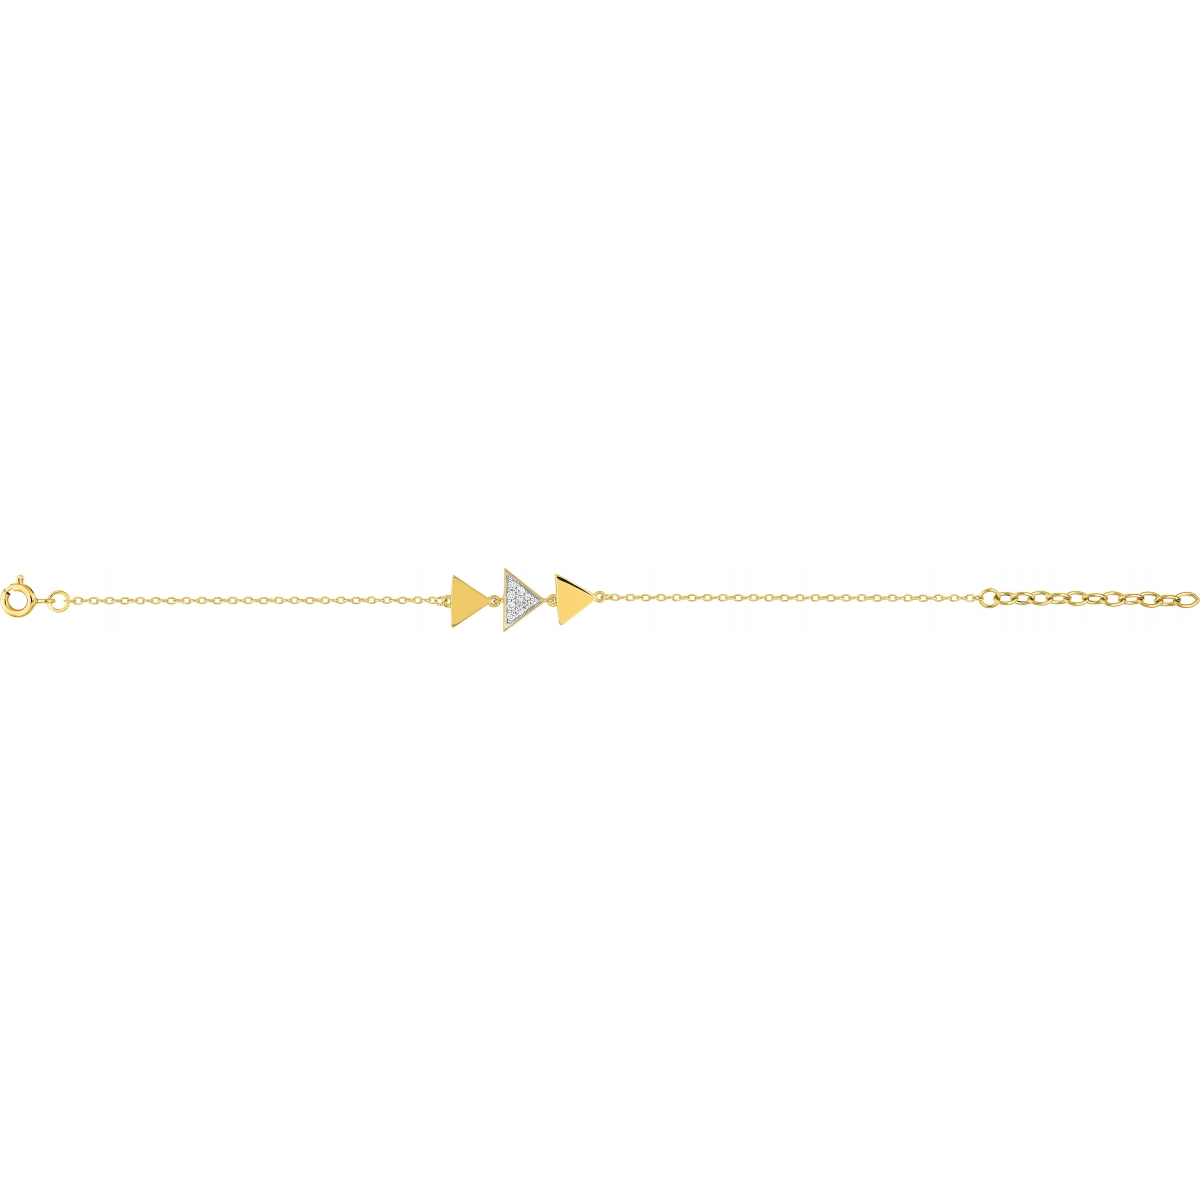 Bracelet 15cm w. cz gold plated Brass 2TG  Lua Blanca  BSBM34Z15.0